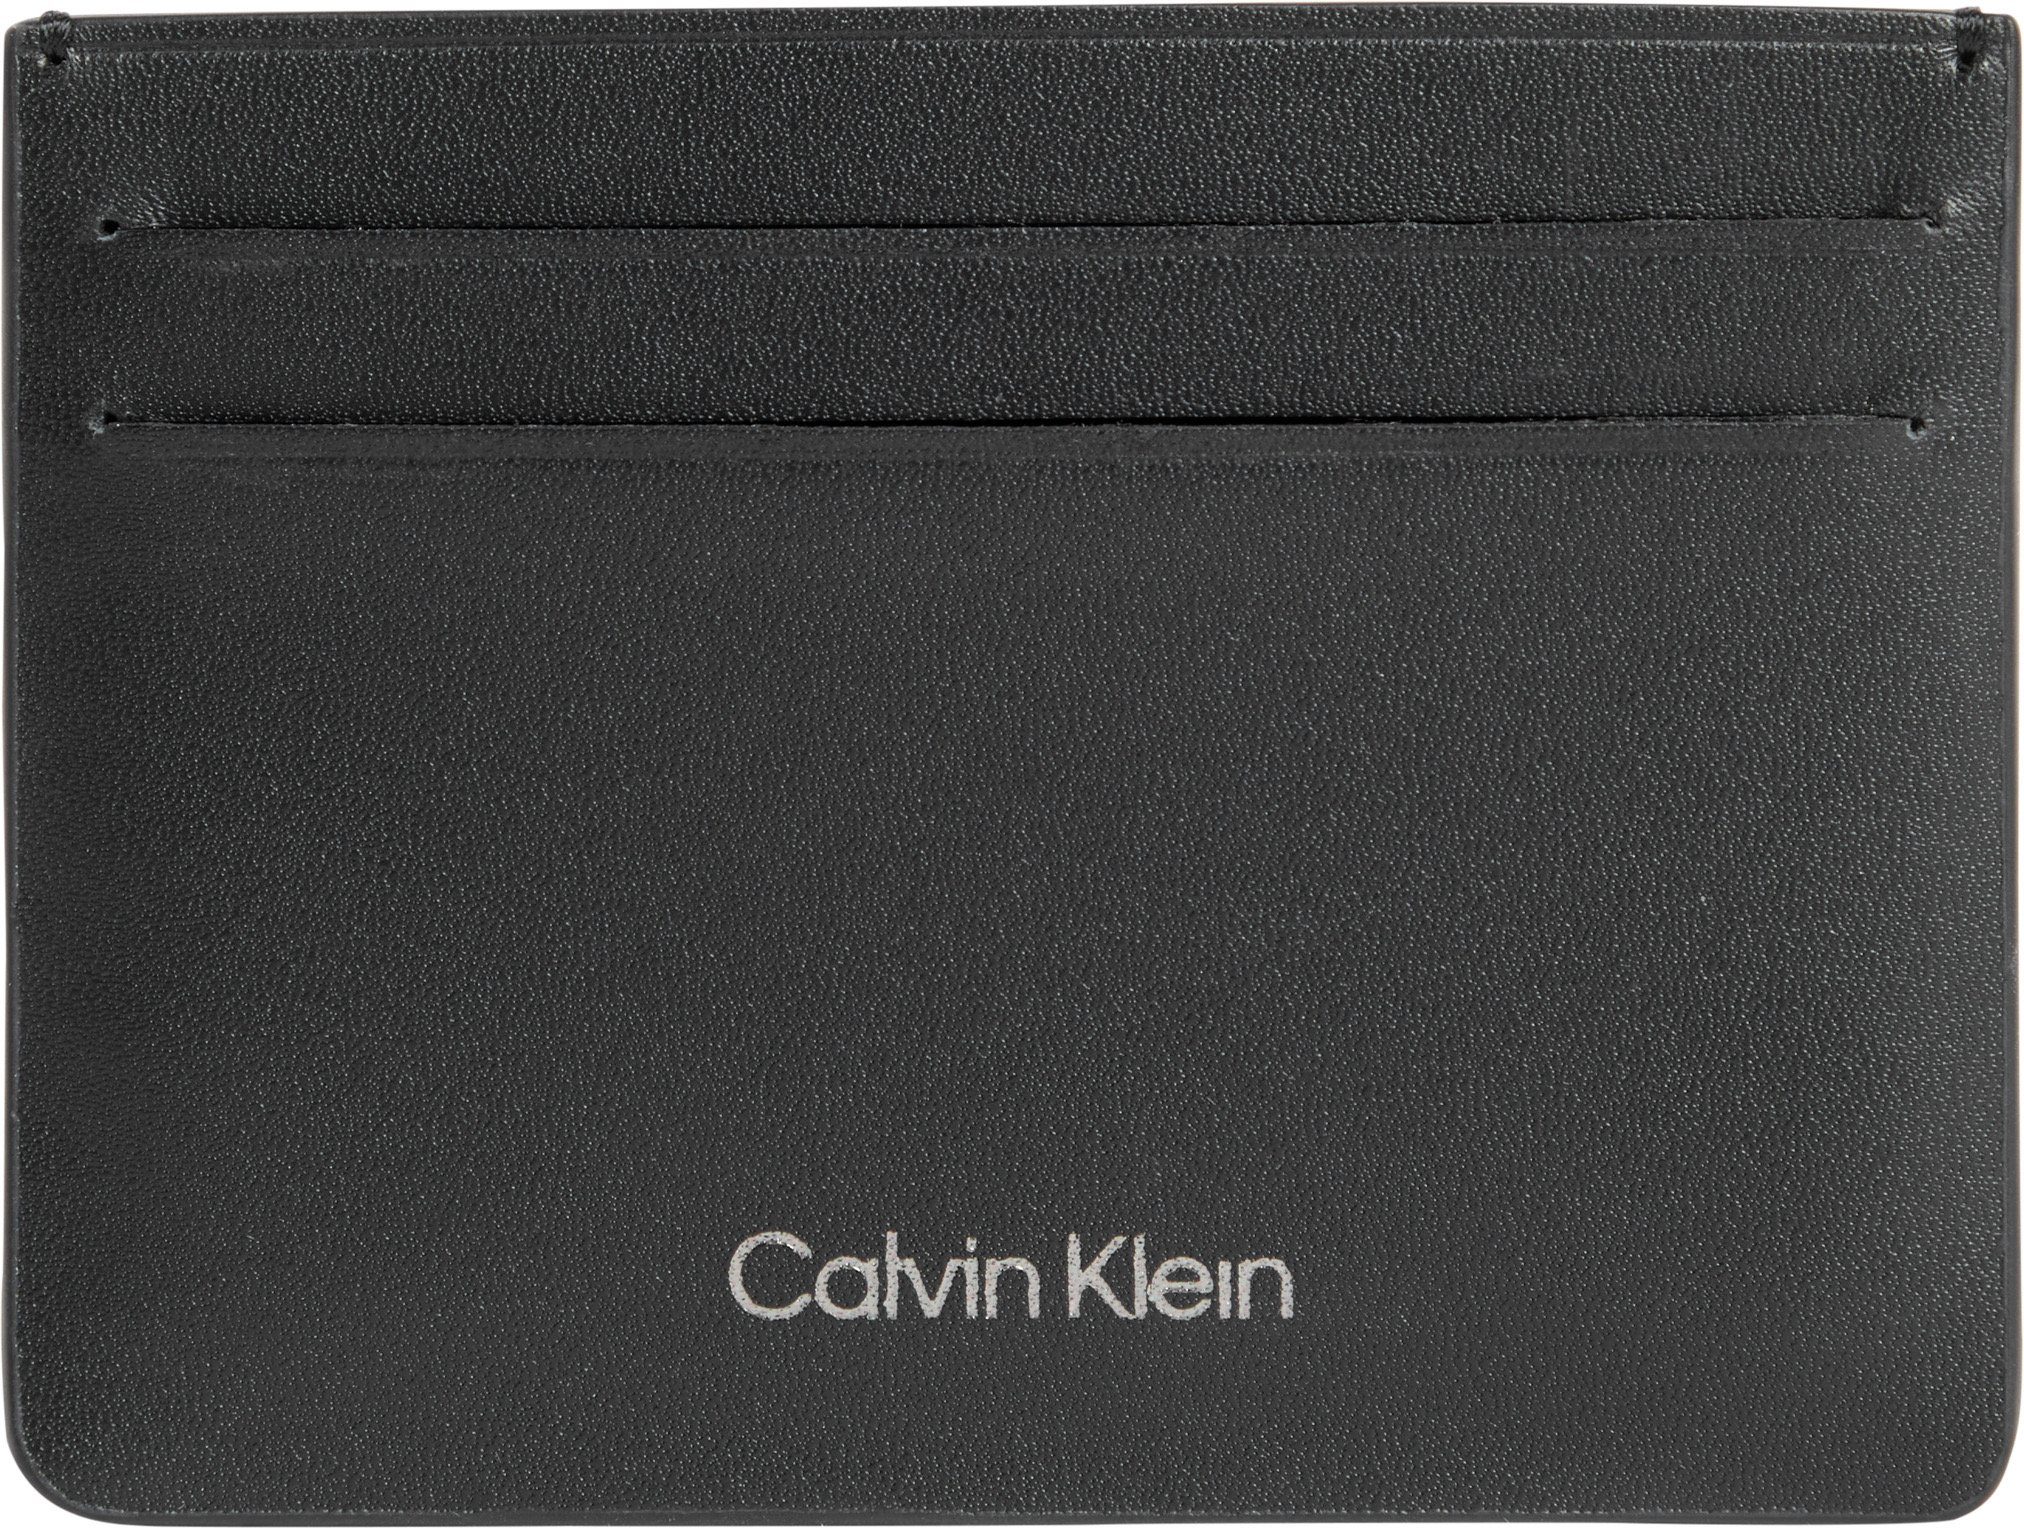 Calvin Klein Kartenetui CARDHOLDER in CK schlichtem Look CONCISE 6CC